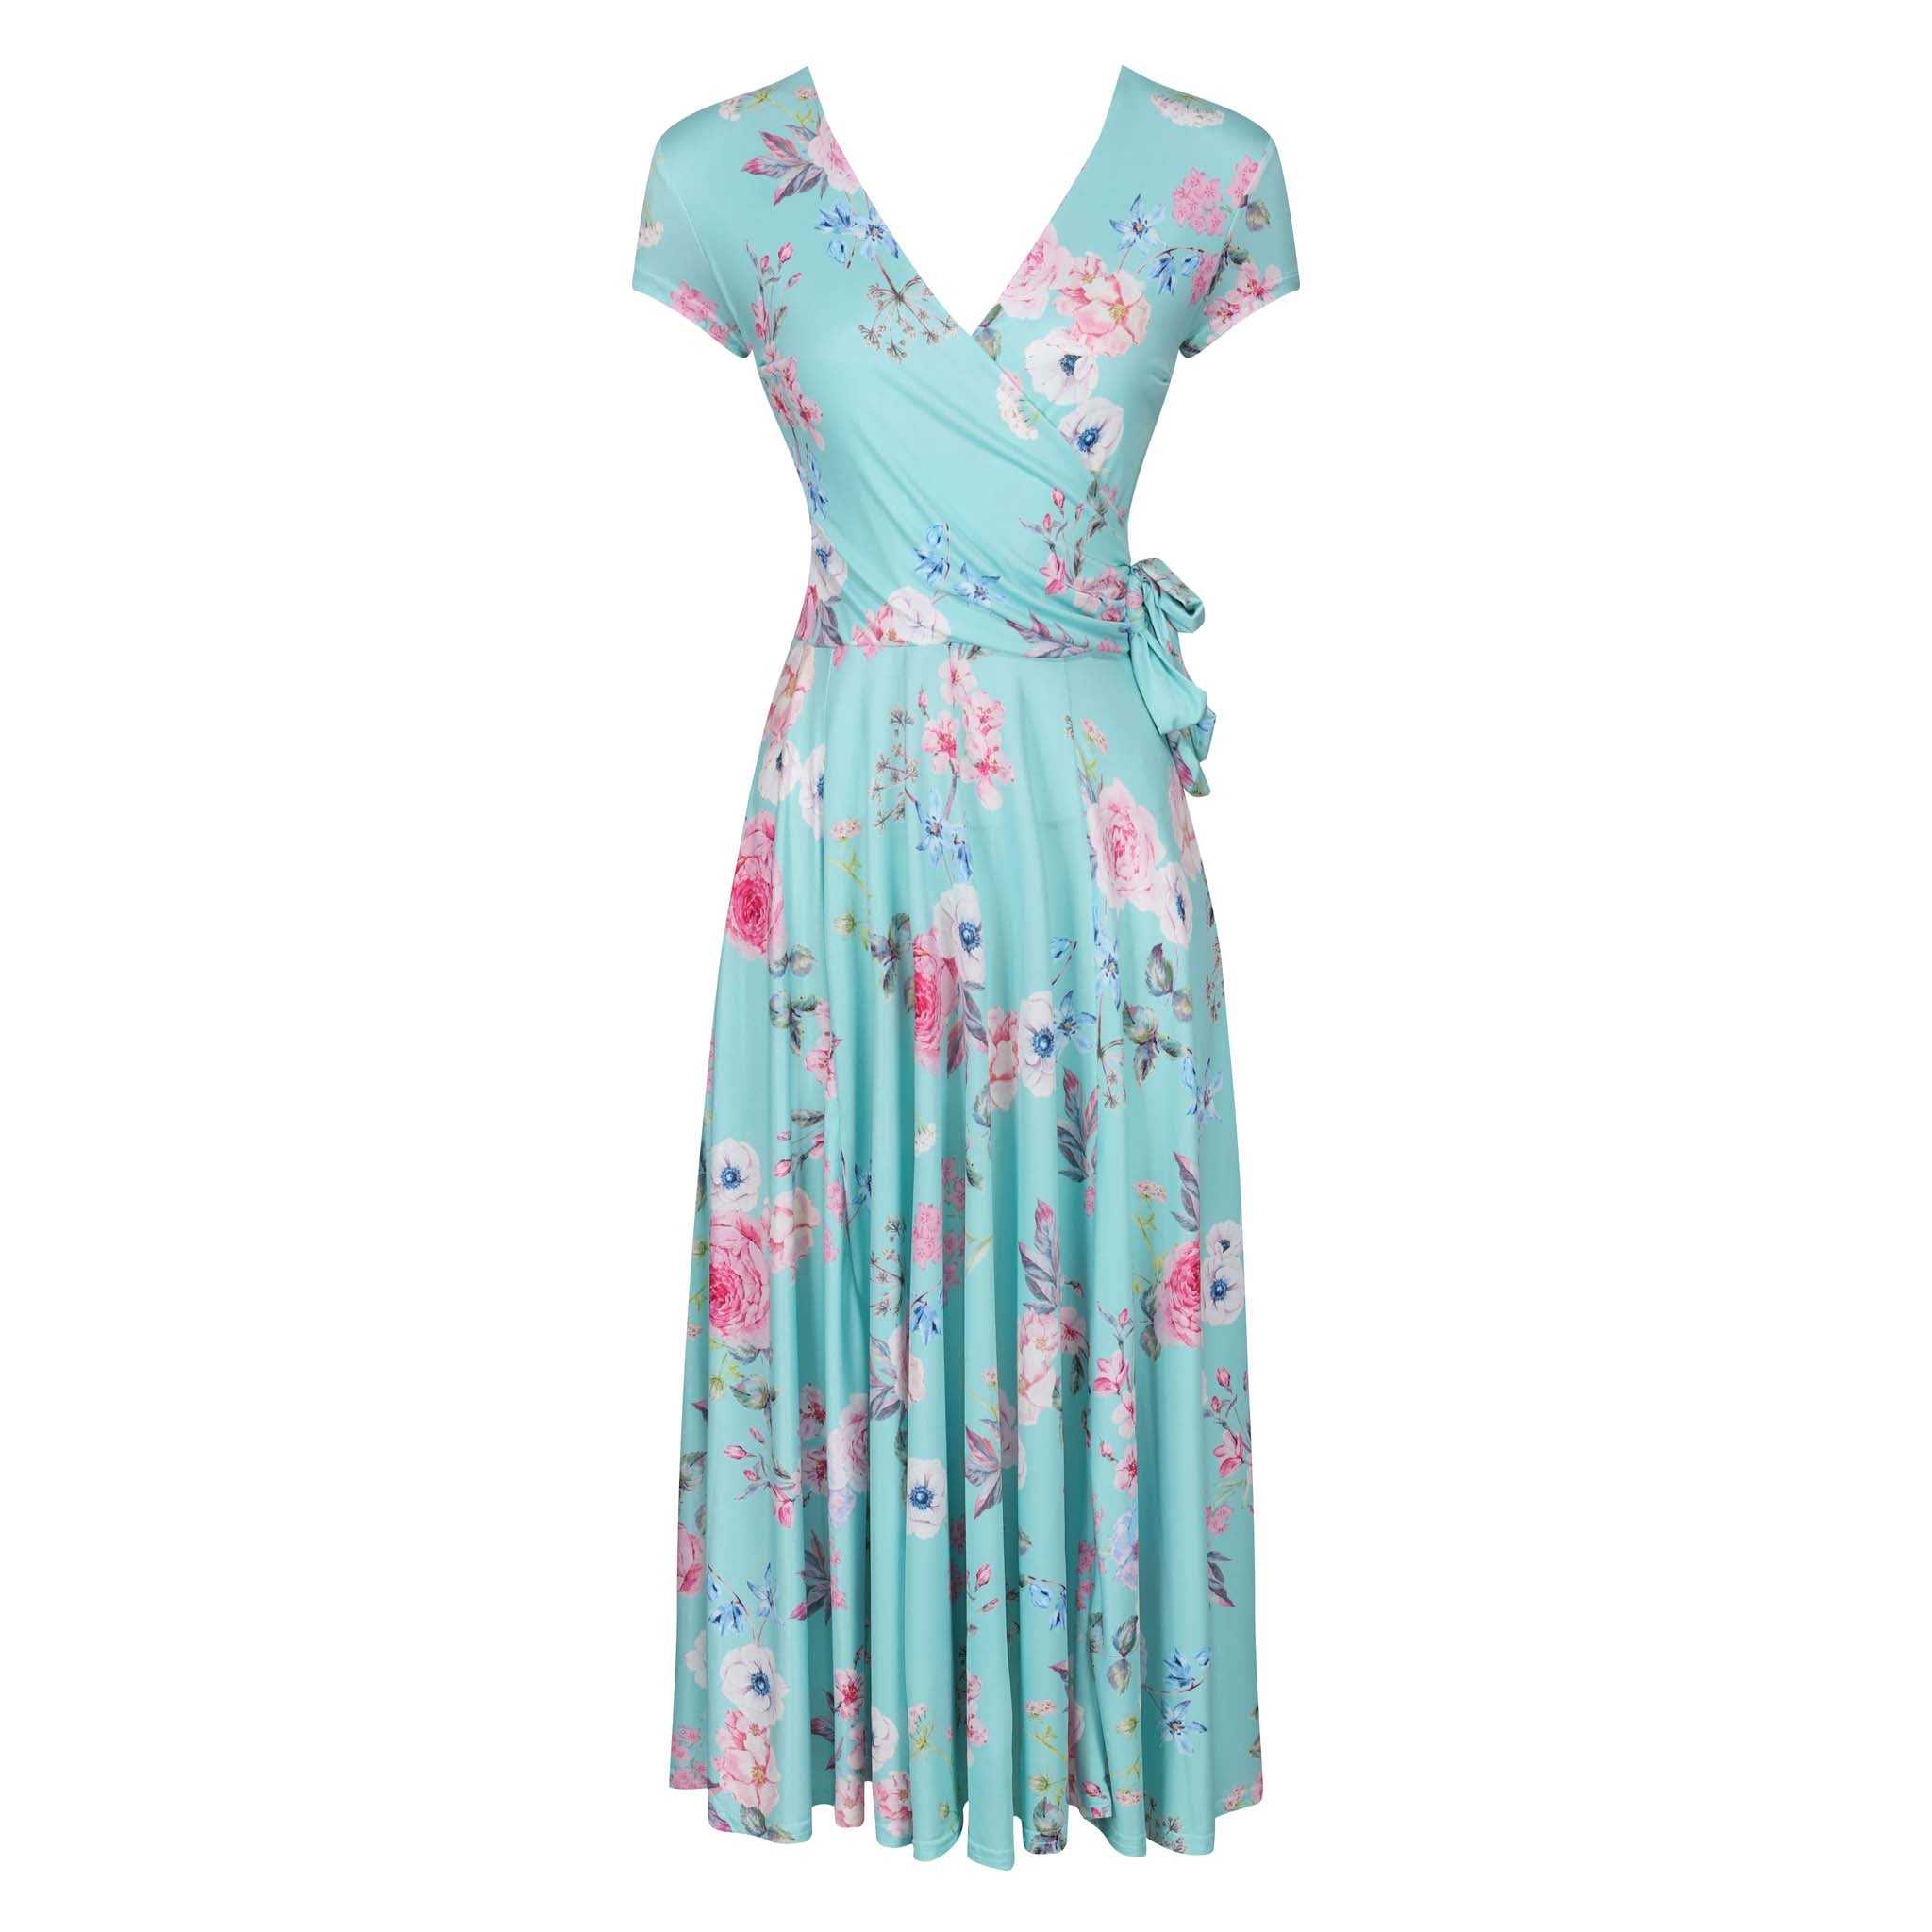 Aqua Mint Floral Print Cap Sleeve Crossover Top Swing Dress - Pretty ...